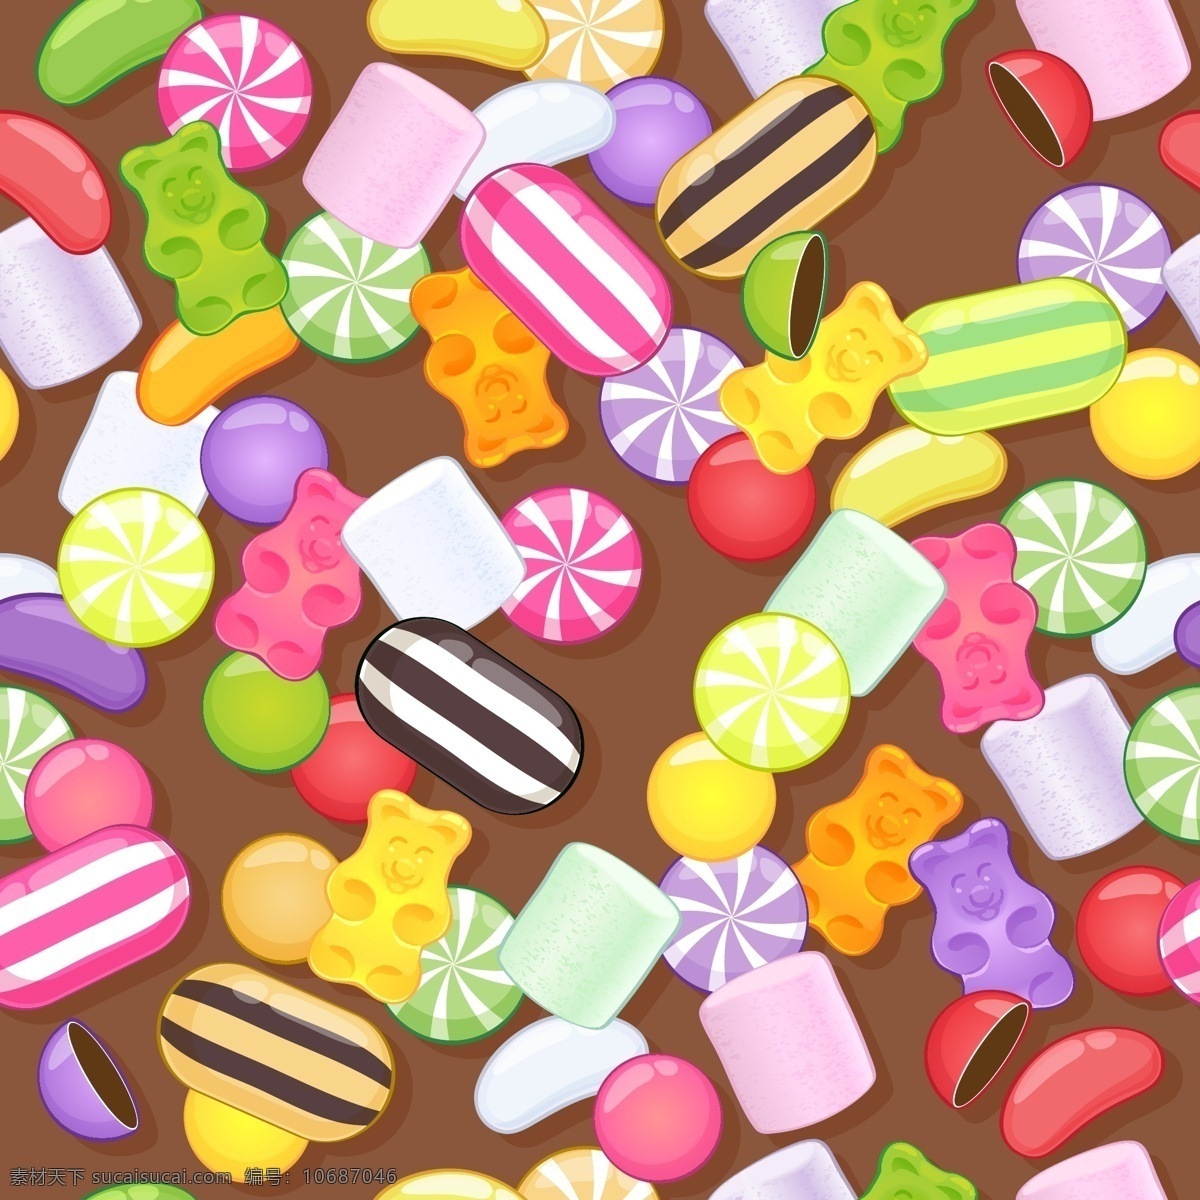 彩色 可爱 美味 糖果 背景 底纹 甜蜜